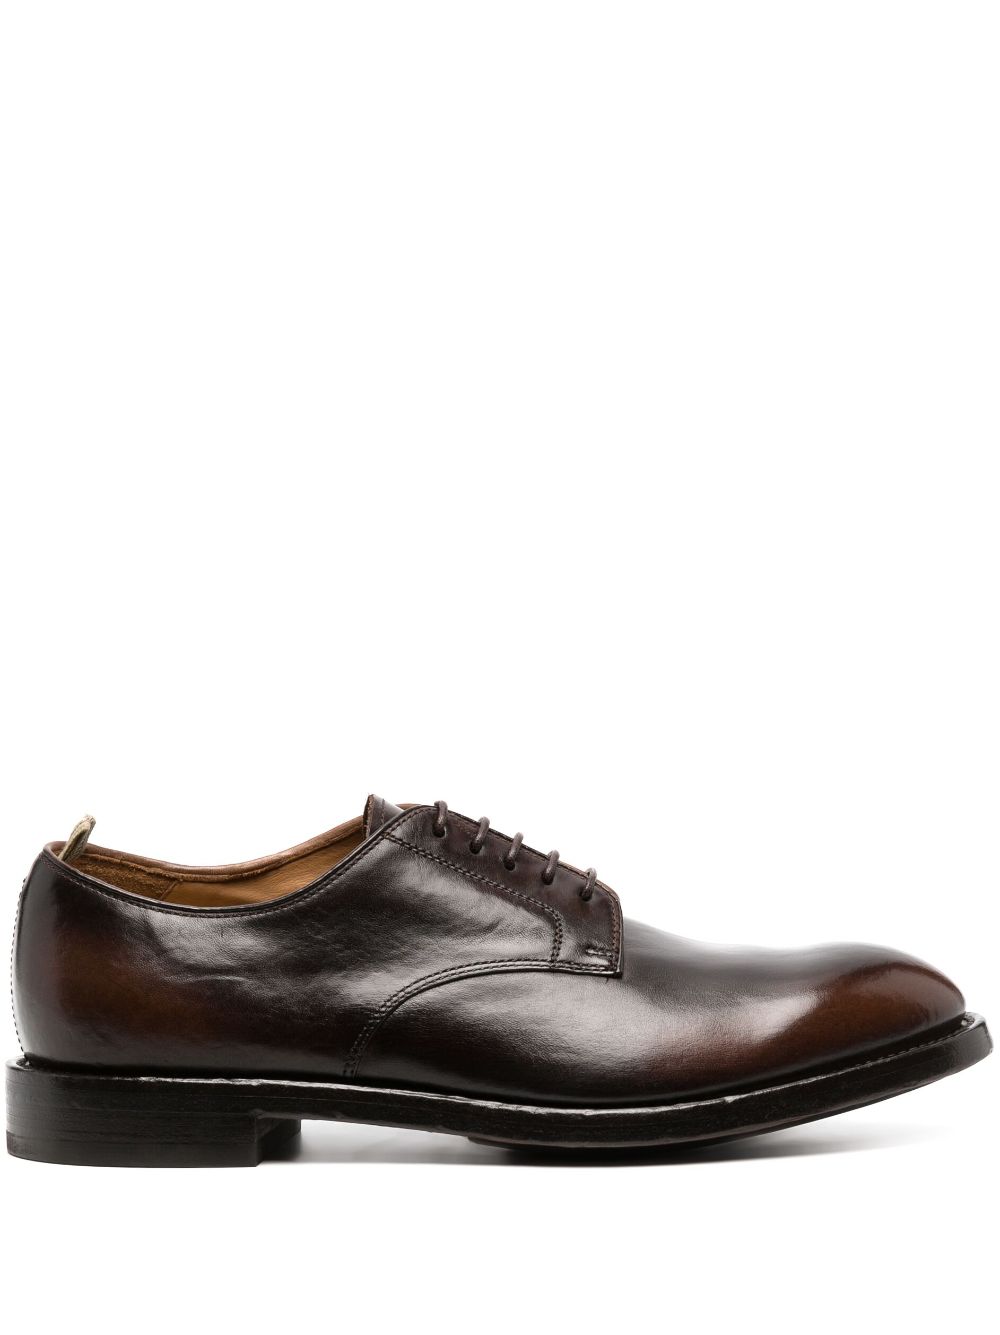 Officine Creative leather derby shoes - Brown von Officine Creative